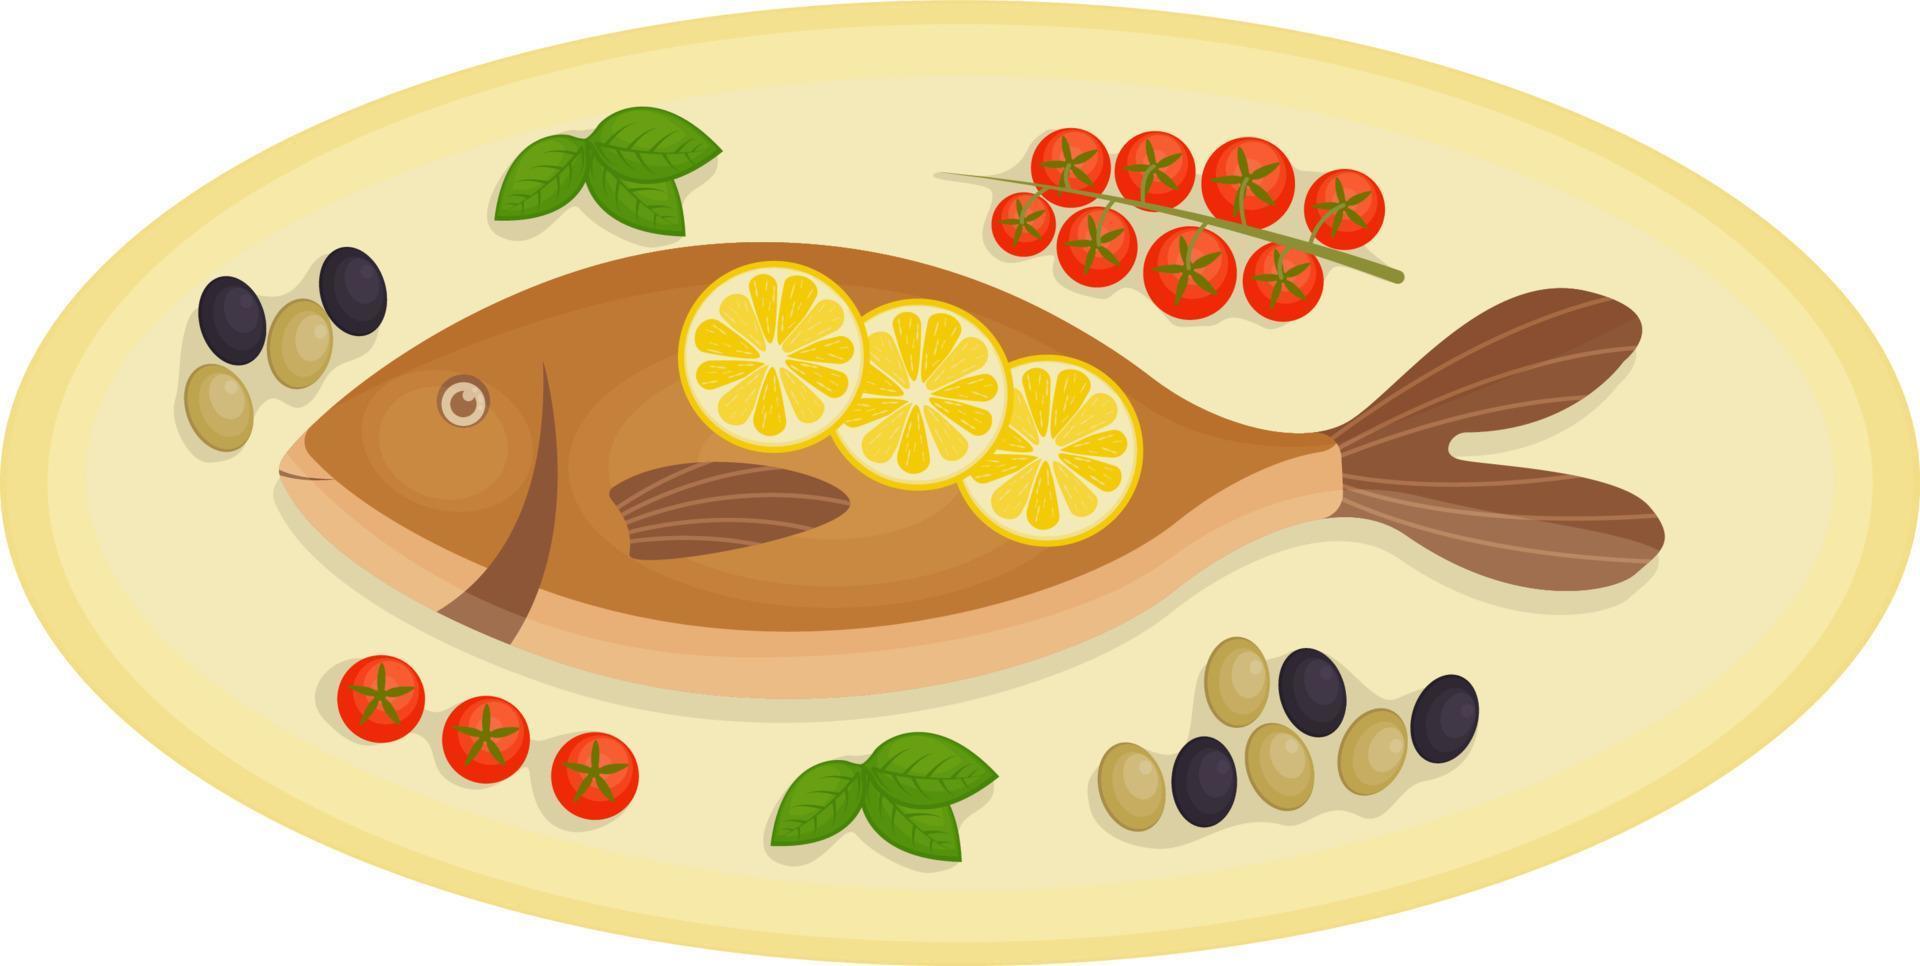 utsökt bakad dorado fisk, eras på ett oval tallrik med körsbär tomater, oliver och citron, som väl som basilika löv. en traditionell maträtt av medelhavs kök. vektor illustratio.